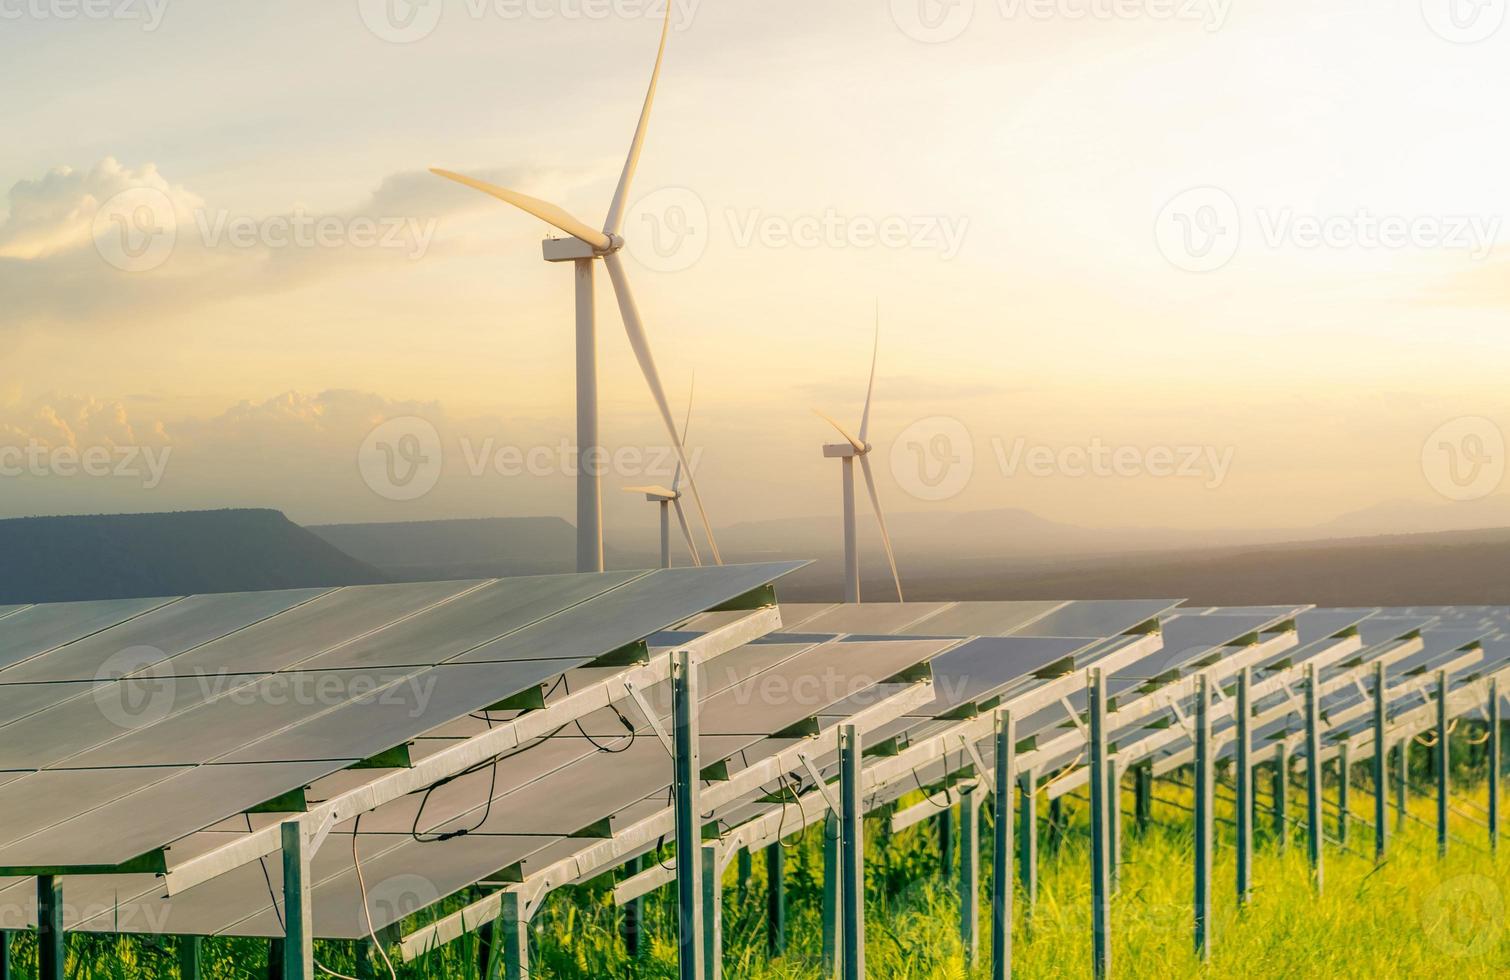 nachhaltige Energie. Solar- und Windturbinenpark. nachhaltige Ressourcen. Sonne, Windkraft. erneuerbare Energie. nachhaltige Entwicklung. Photovoltaik-Panel. grüne Energie. alternative Stromquelle. foto